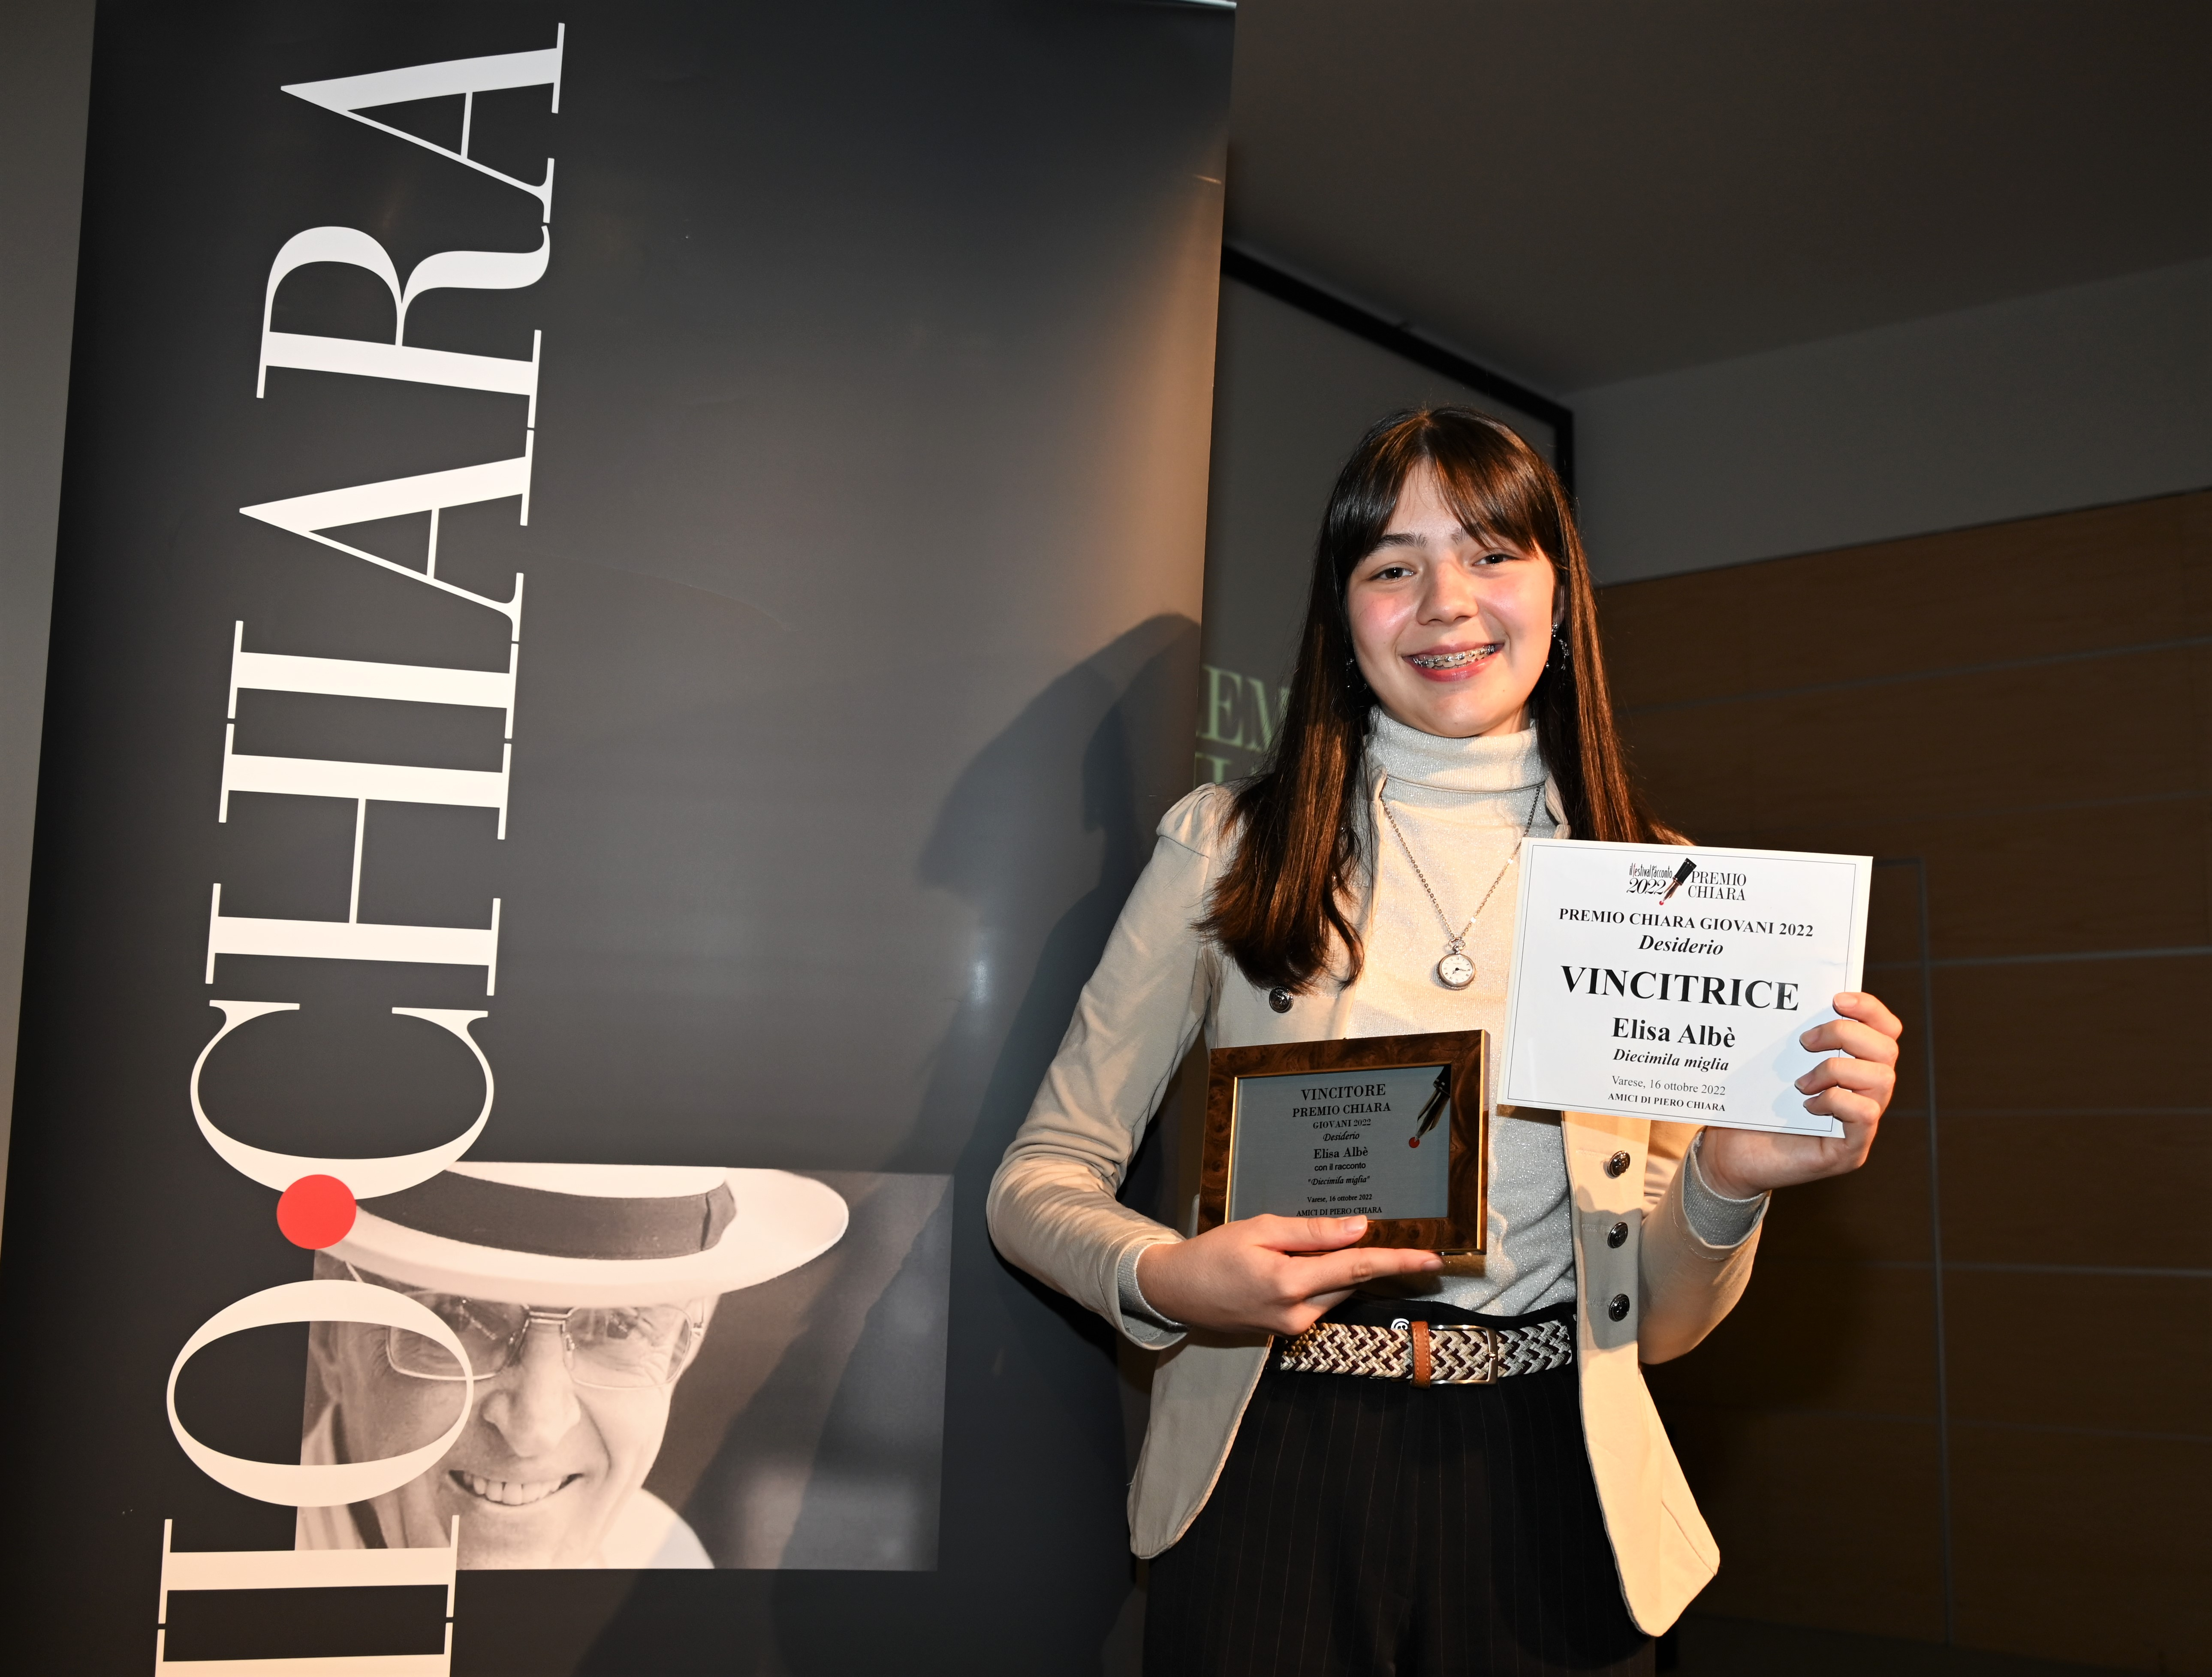 Elisa Albè Vincitrice Premio Chiara Giovani 2022